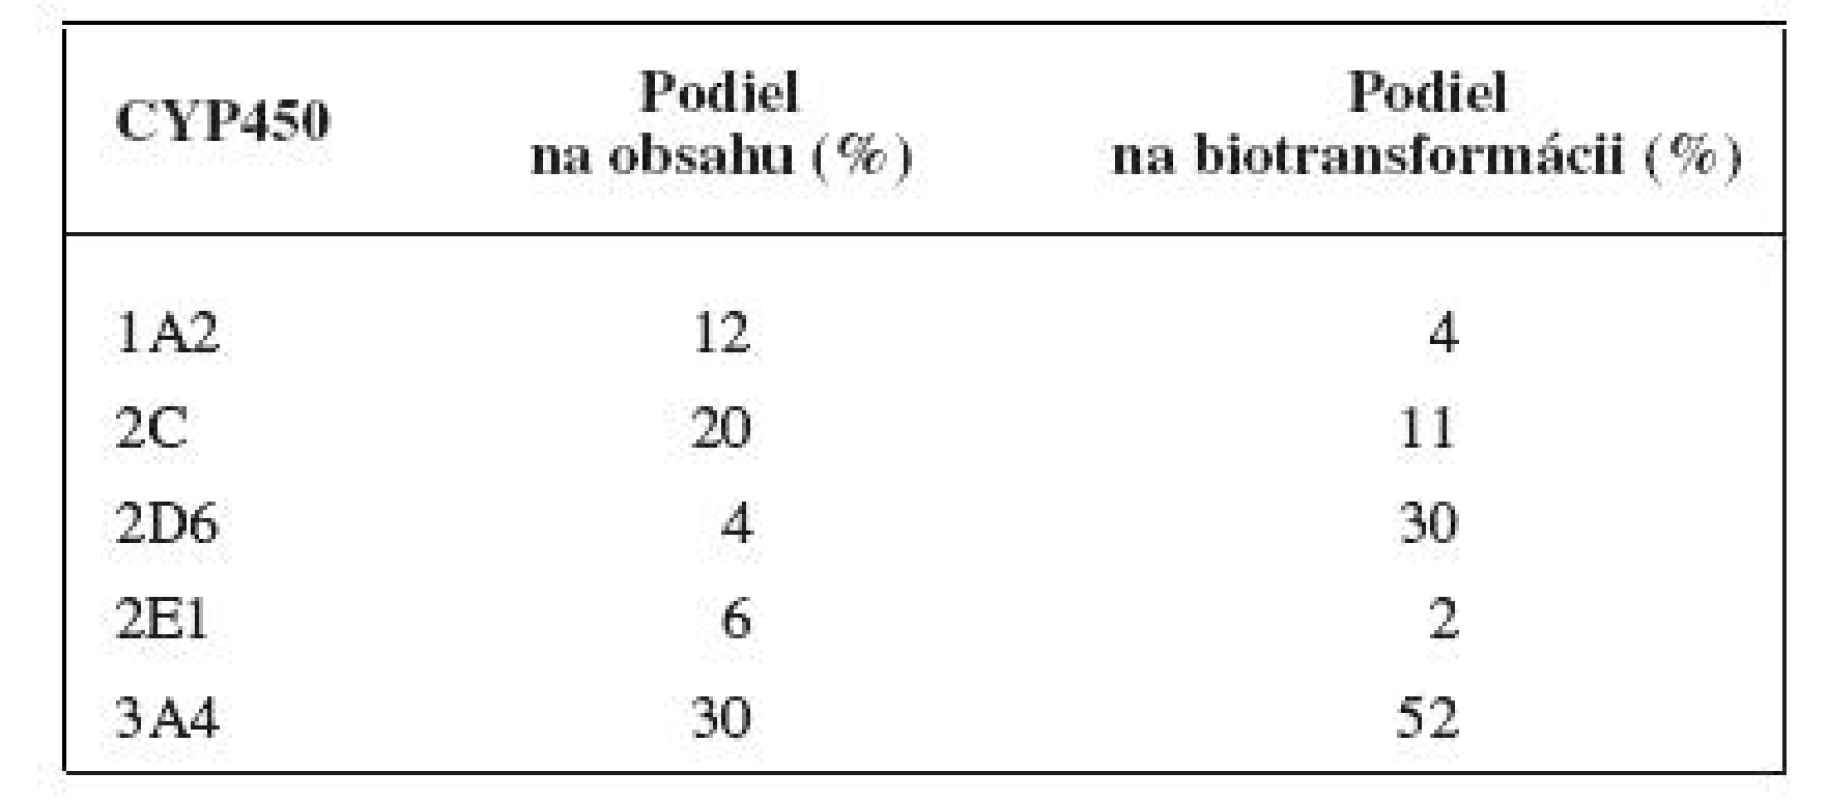 Priemerný podiel jednotlivých izoforiem na celkovom obsahu cytochrómu P450 v pečeni a na biotransformácii
liečiv &lt;sup&gt;4)&lt;/sup&gt;